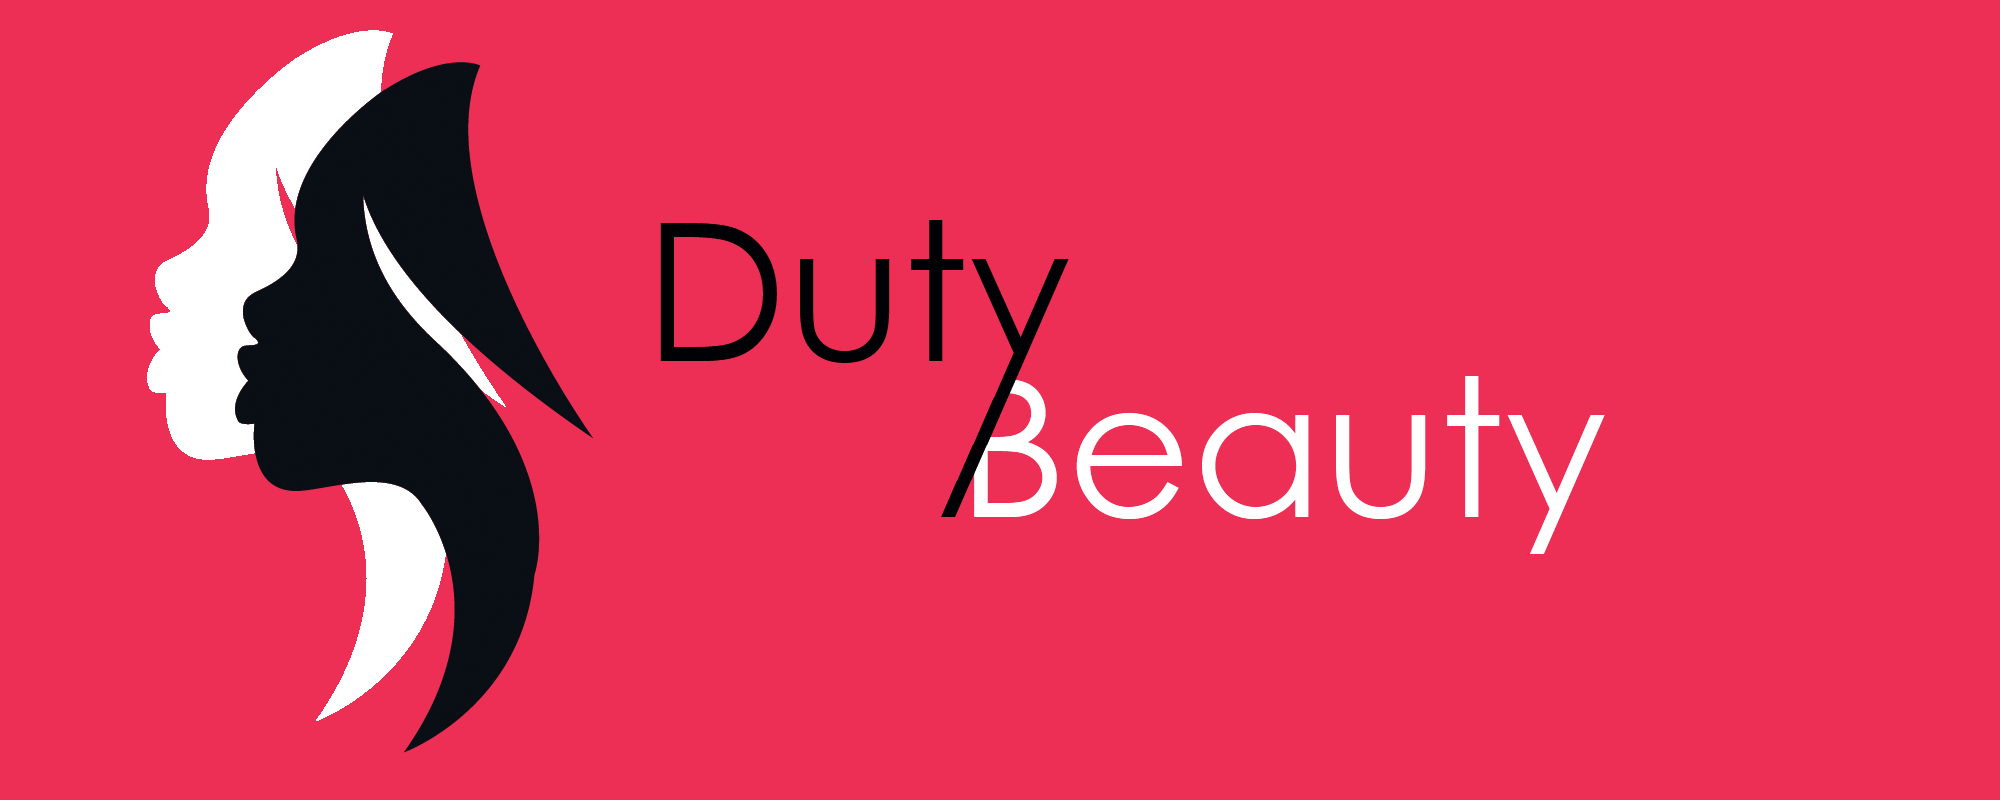 Люксовая парфюмерия в интернет-магазине "Duty Beauty" всего за 17,40 руб.